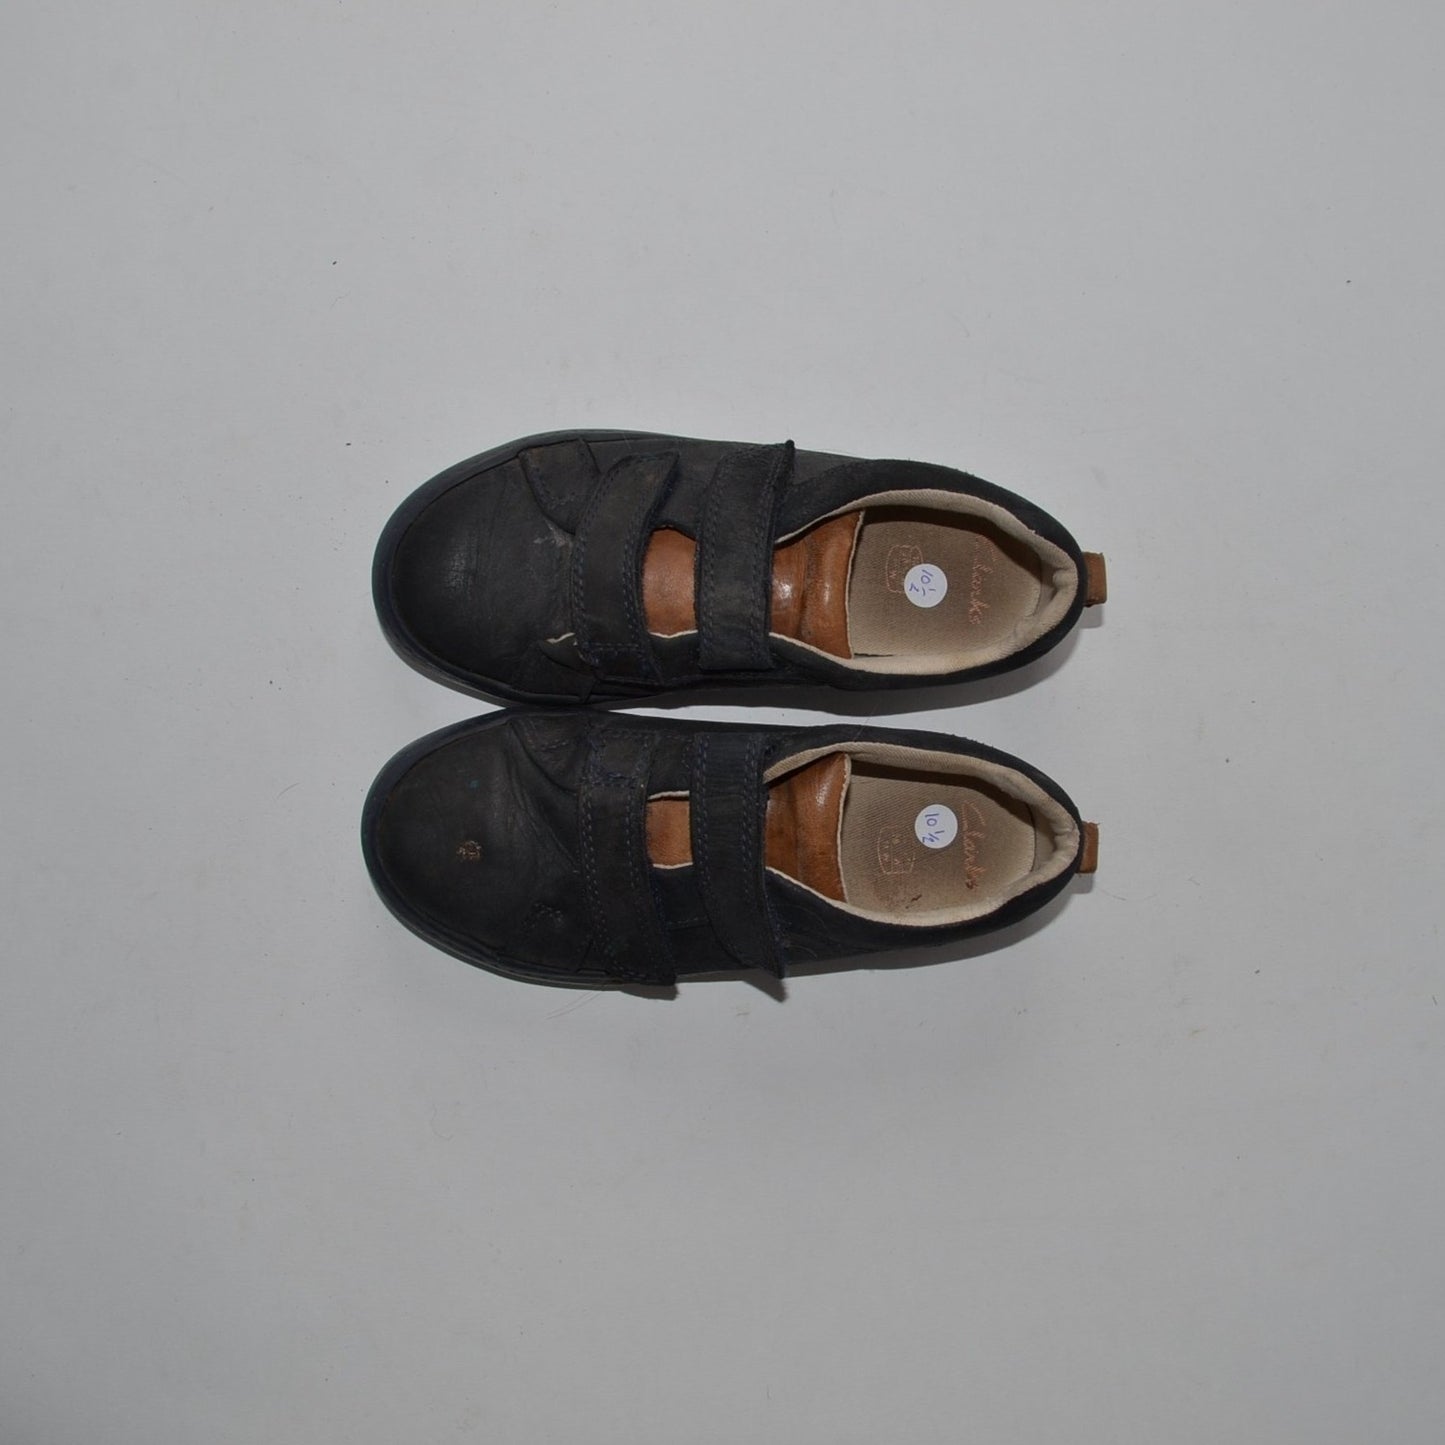 Shoes - Clarks Velcro - Shoe Size 10.5 (jr)